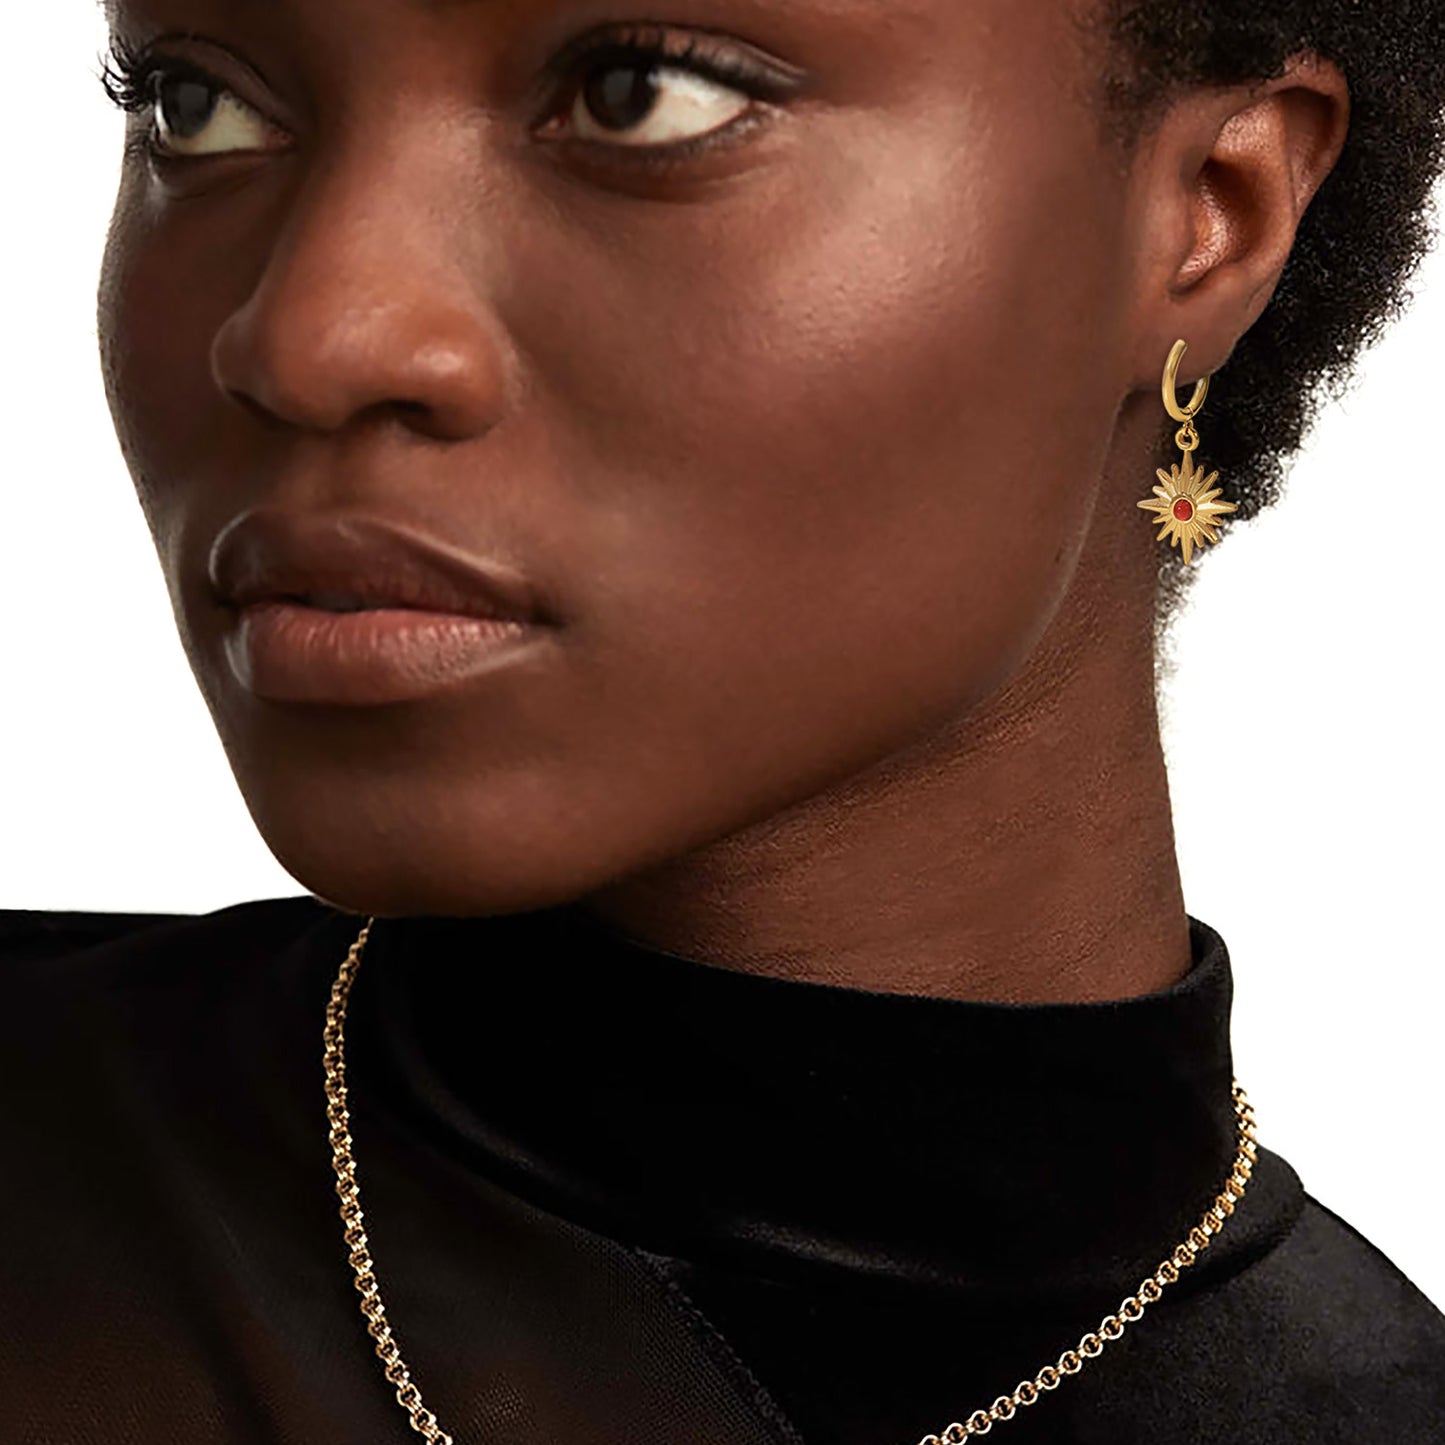 5pcs 18K Gold-Plated Stainless Steel Earrings Natural Stone Octet Star Pendant Ring Earrings For Women